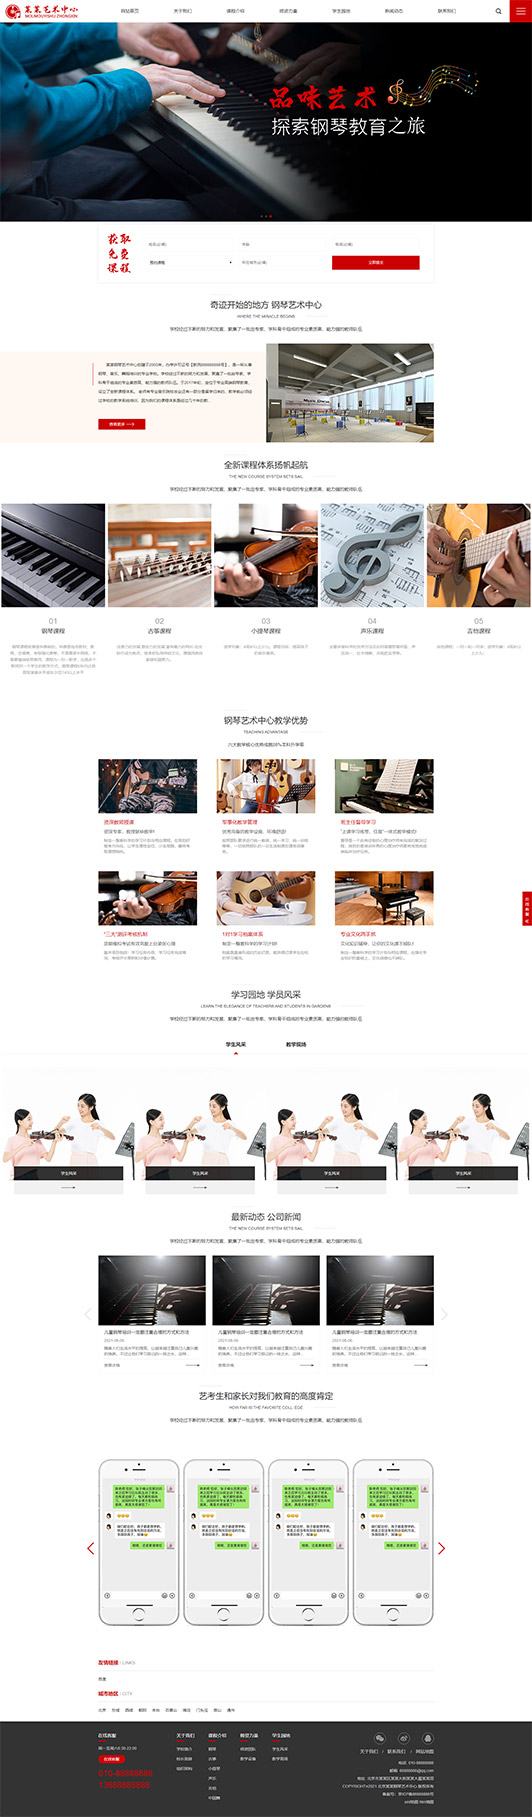 温州钢琴艺术培训公司响应式企业网站